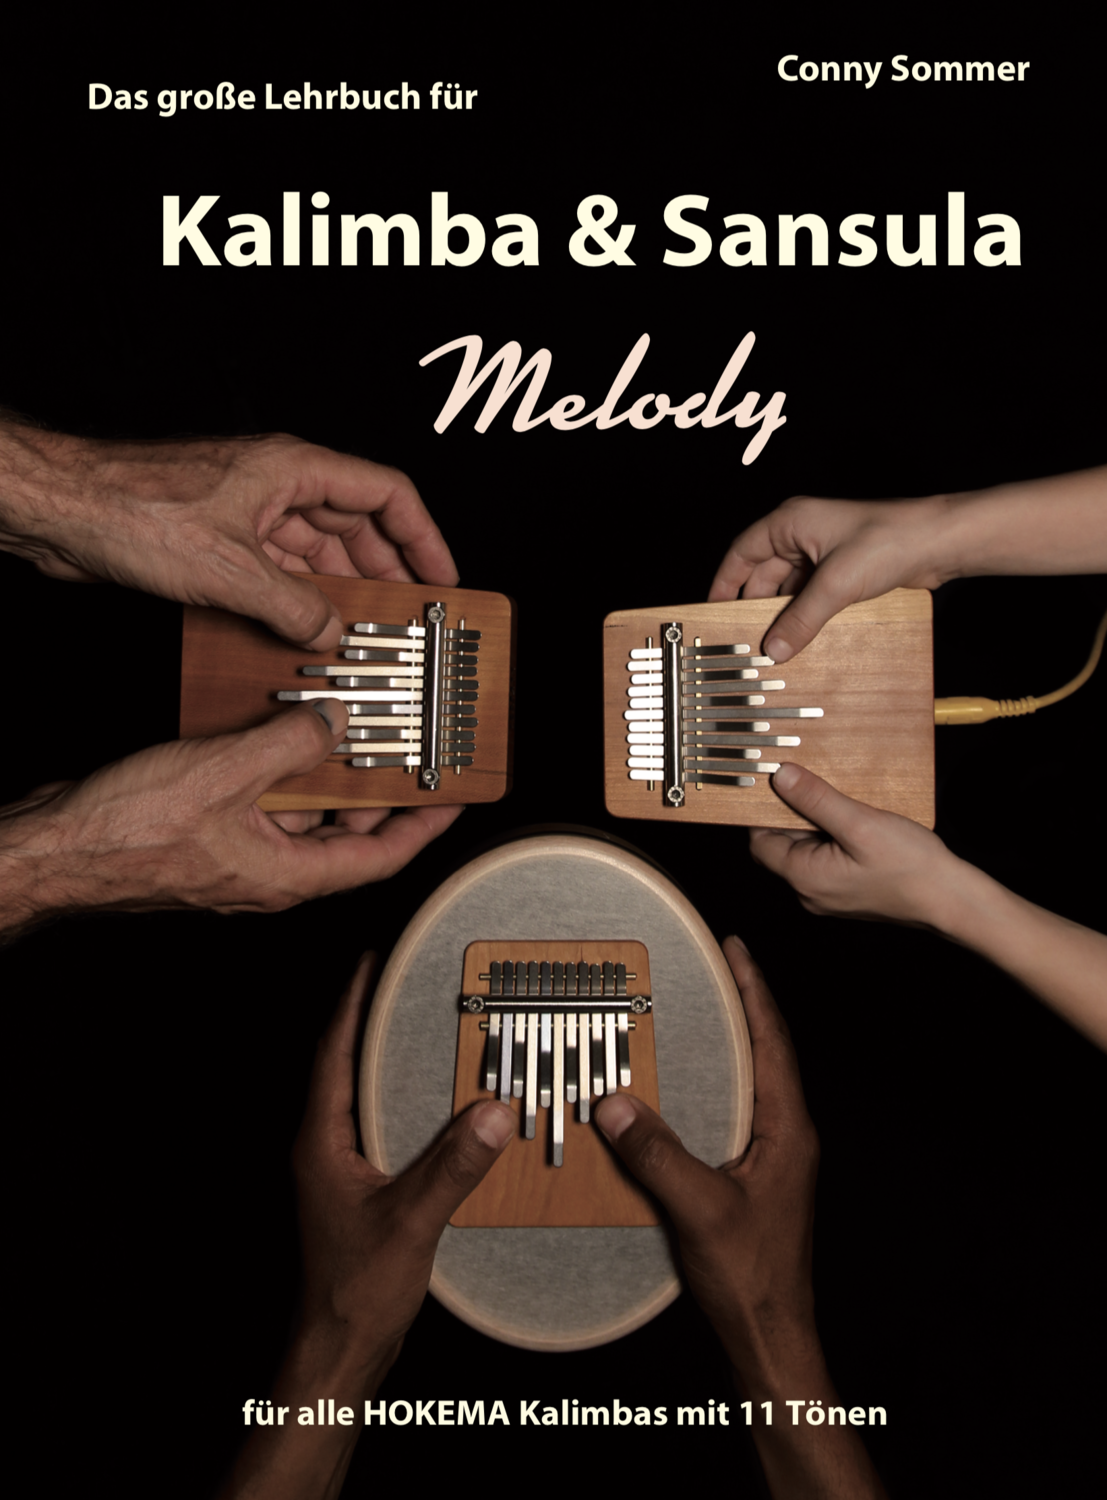 Das große Lehrbuch für Kalimba & Sansula Melody